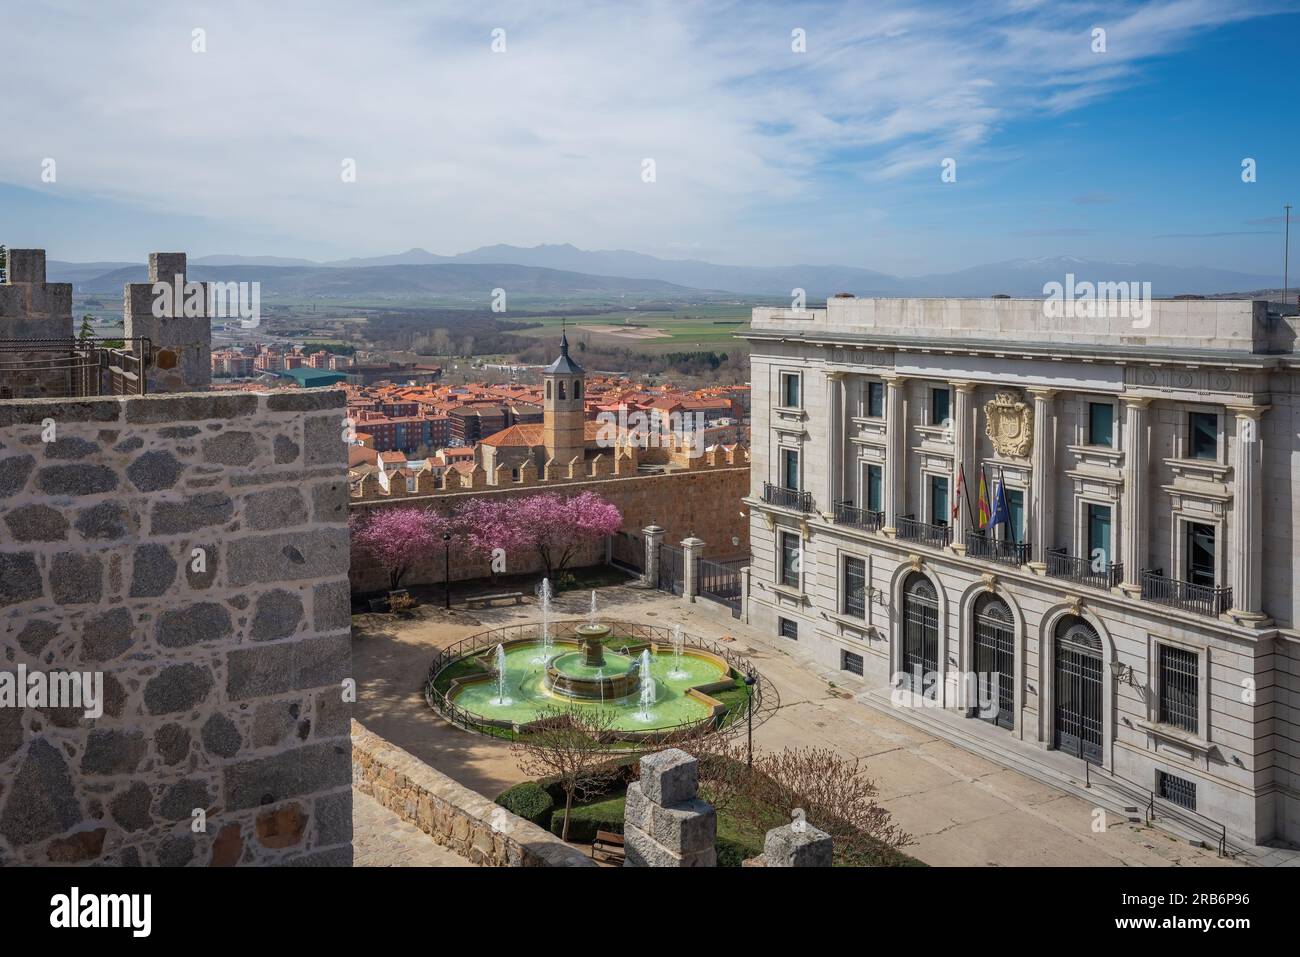 Vista aerea di Plaza Adolfo Suarez con l'edificio del Dipartimento di economia e Finanza - Avila, Spagna Foto Stock